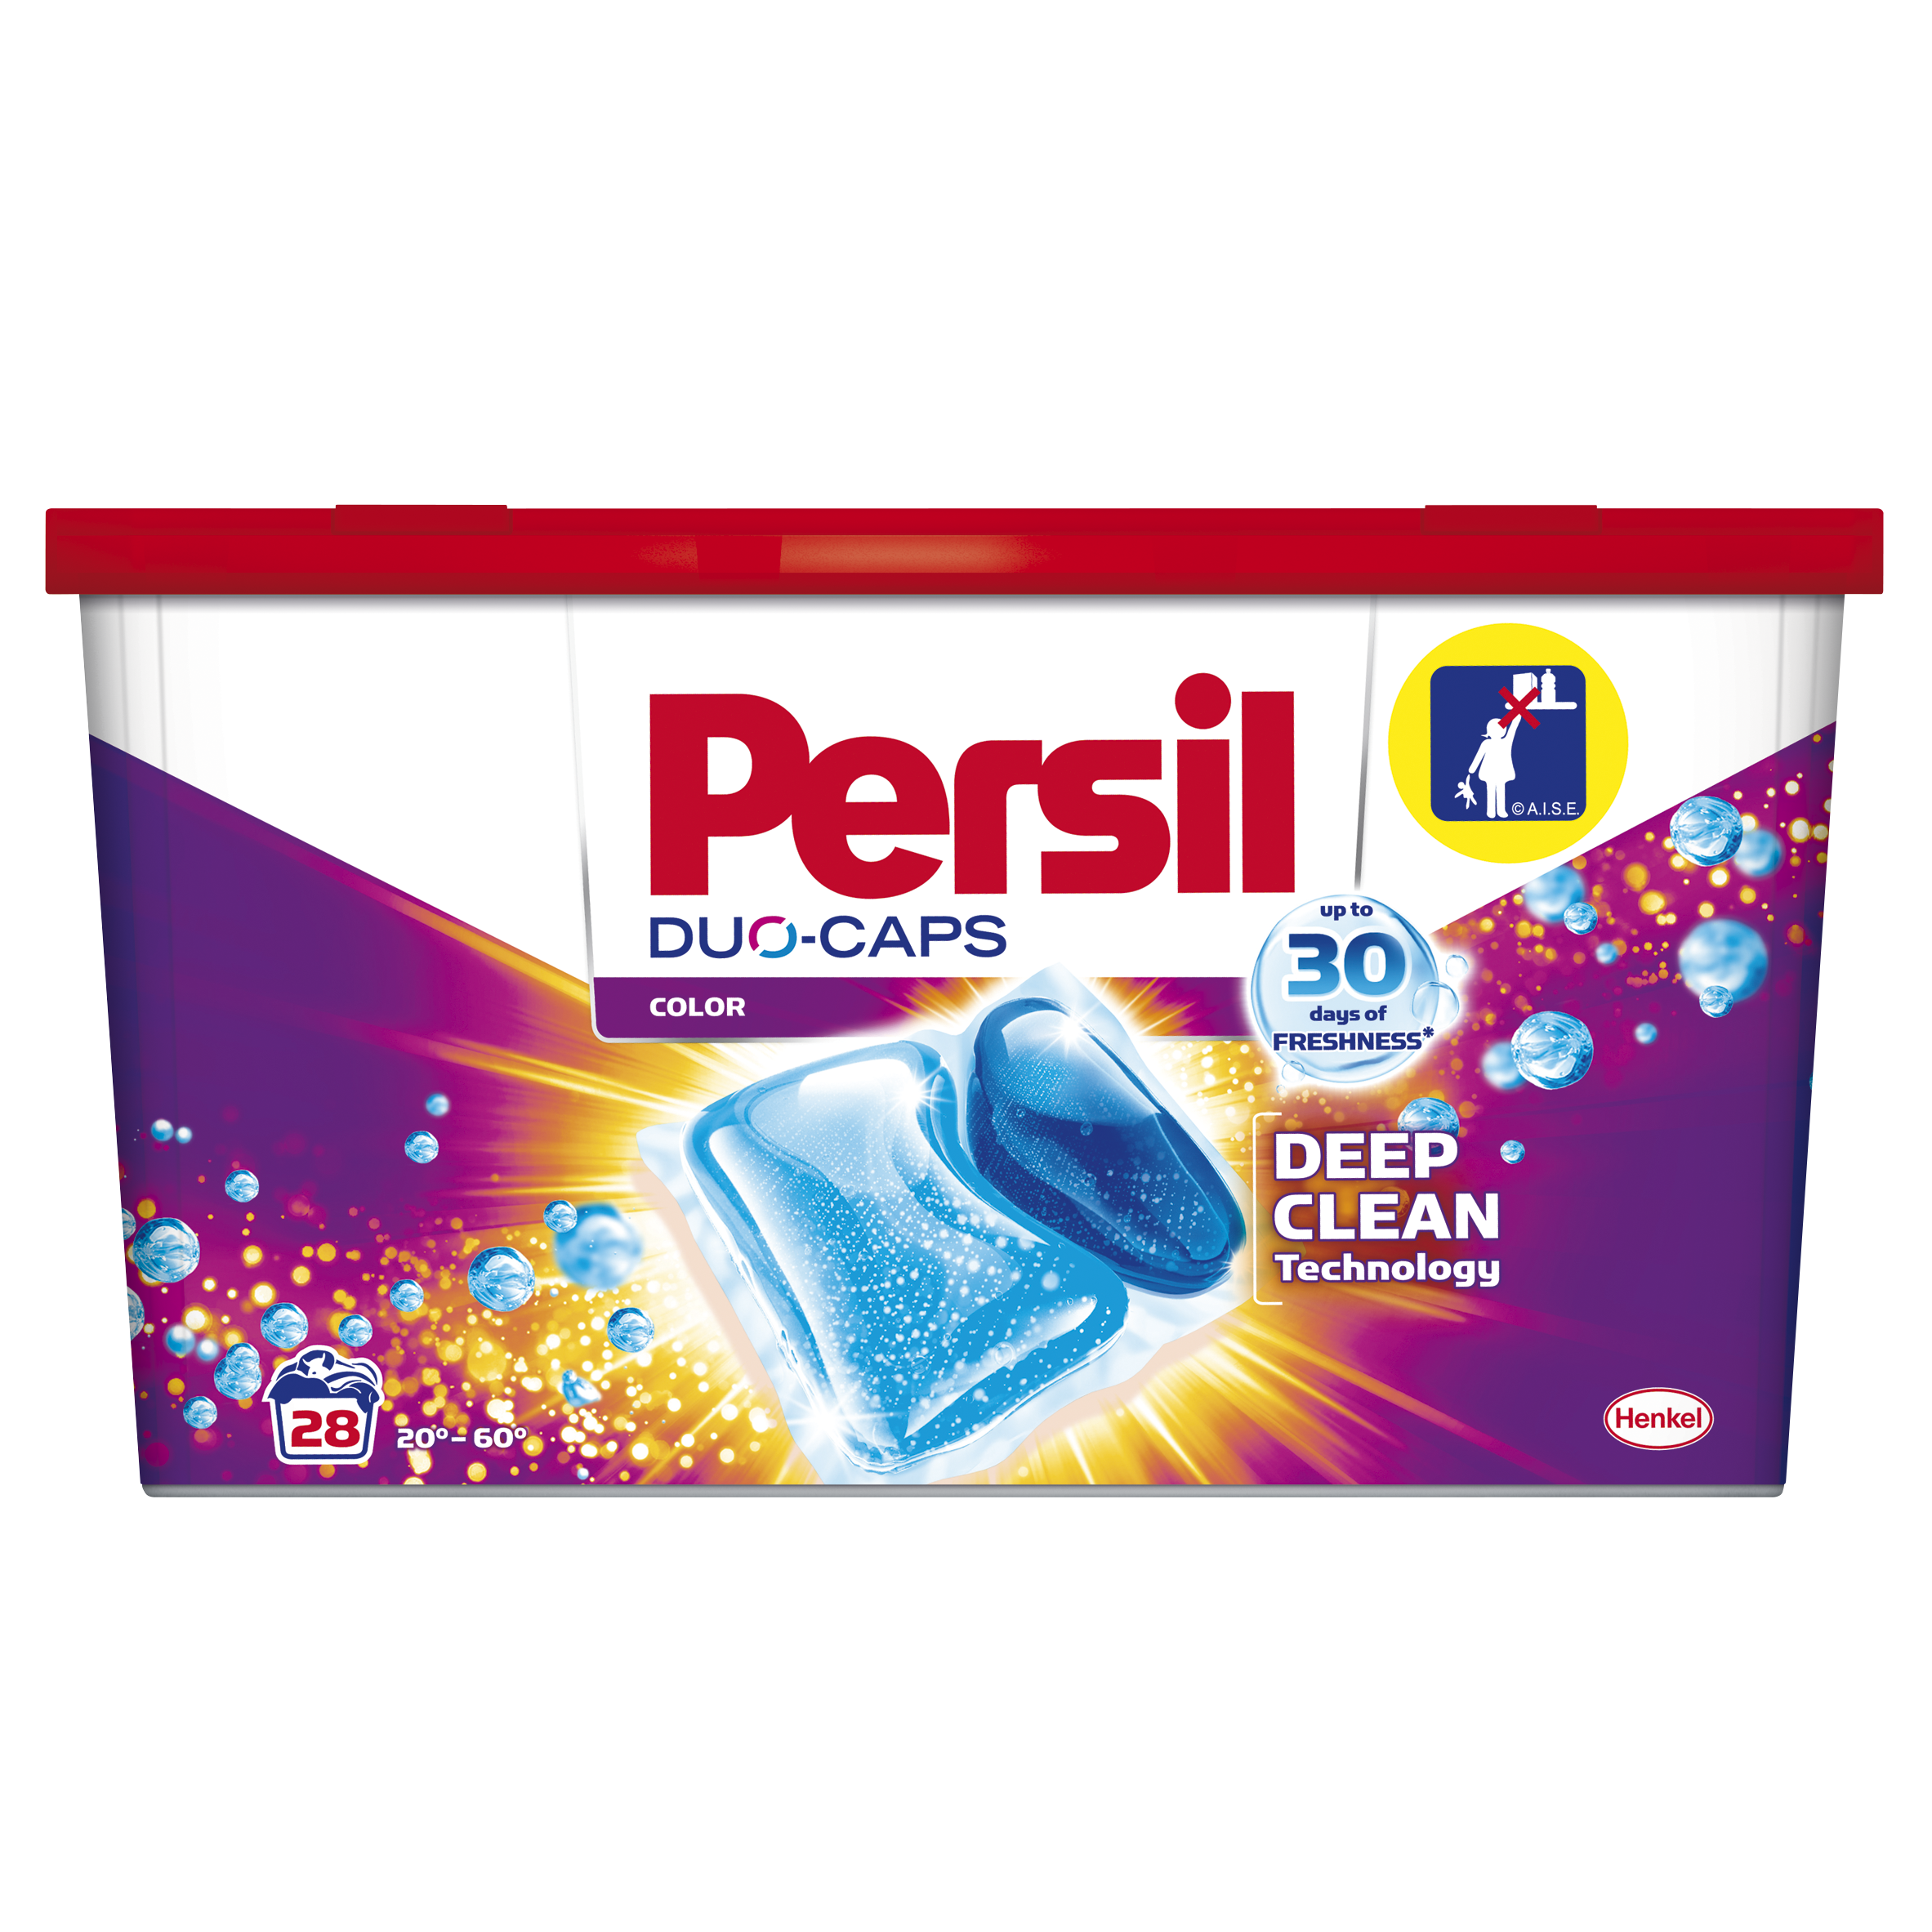 Дуо-капсули для прання Persil Color, 28 шт. (737016) - фото 1